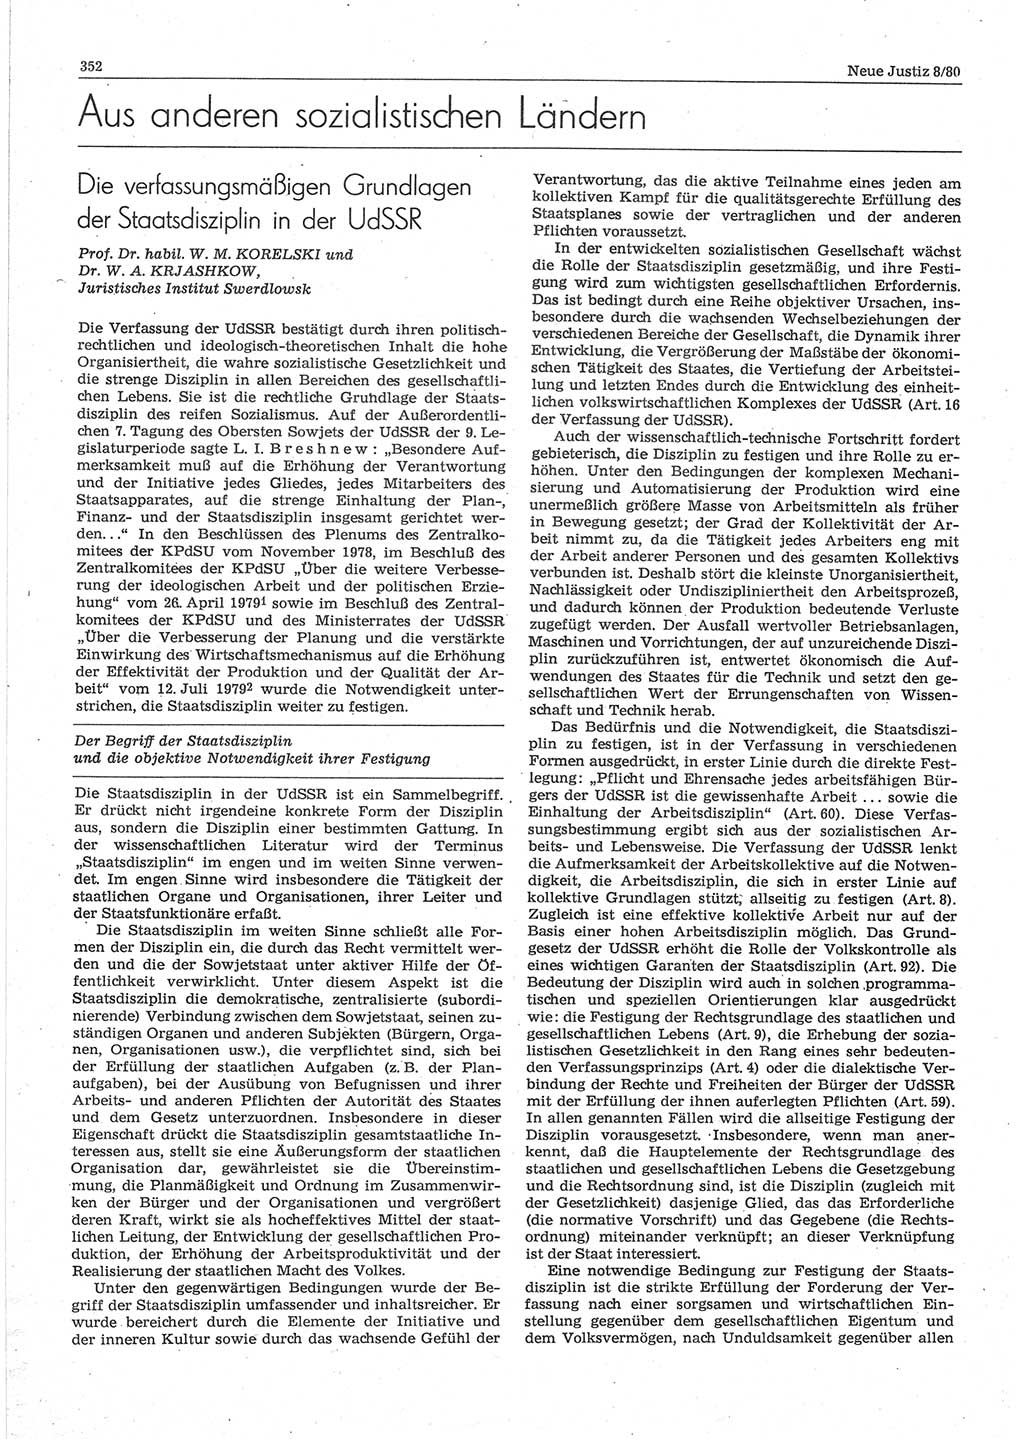 Neue Justiz (NJ), Zeitschrift für sozialistisches Recht und Gesetzlichkeit [Deutsche Demokratische Republik (DDR)], 34. Jahrgang 1980, Seite 352 (NJ DDR 1980, S. 352)